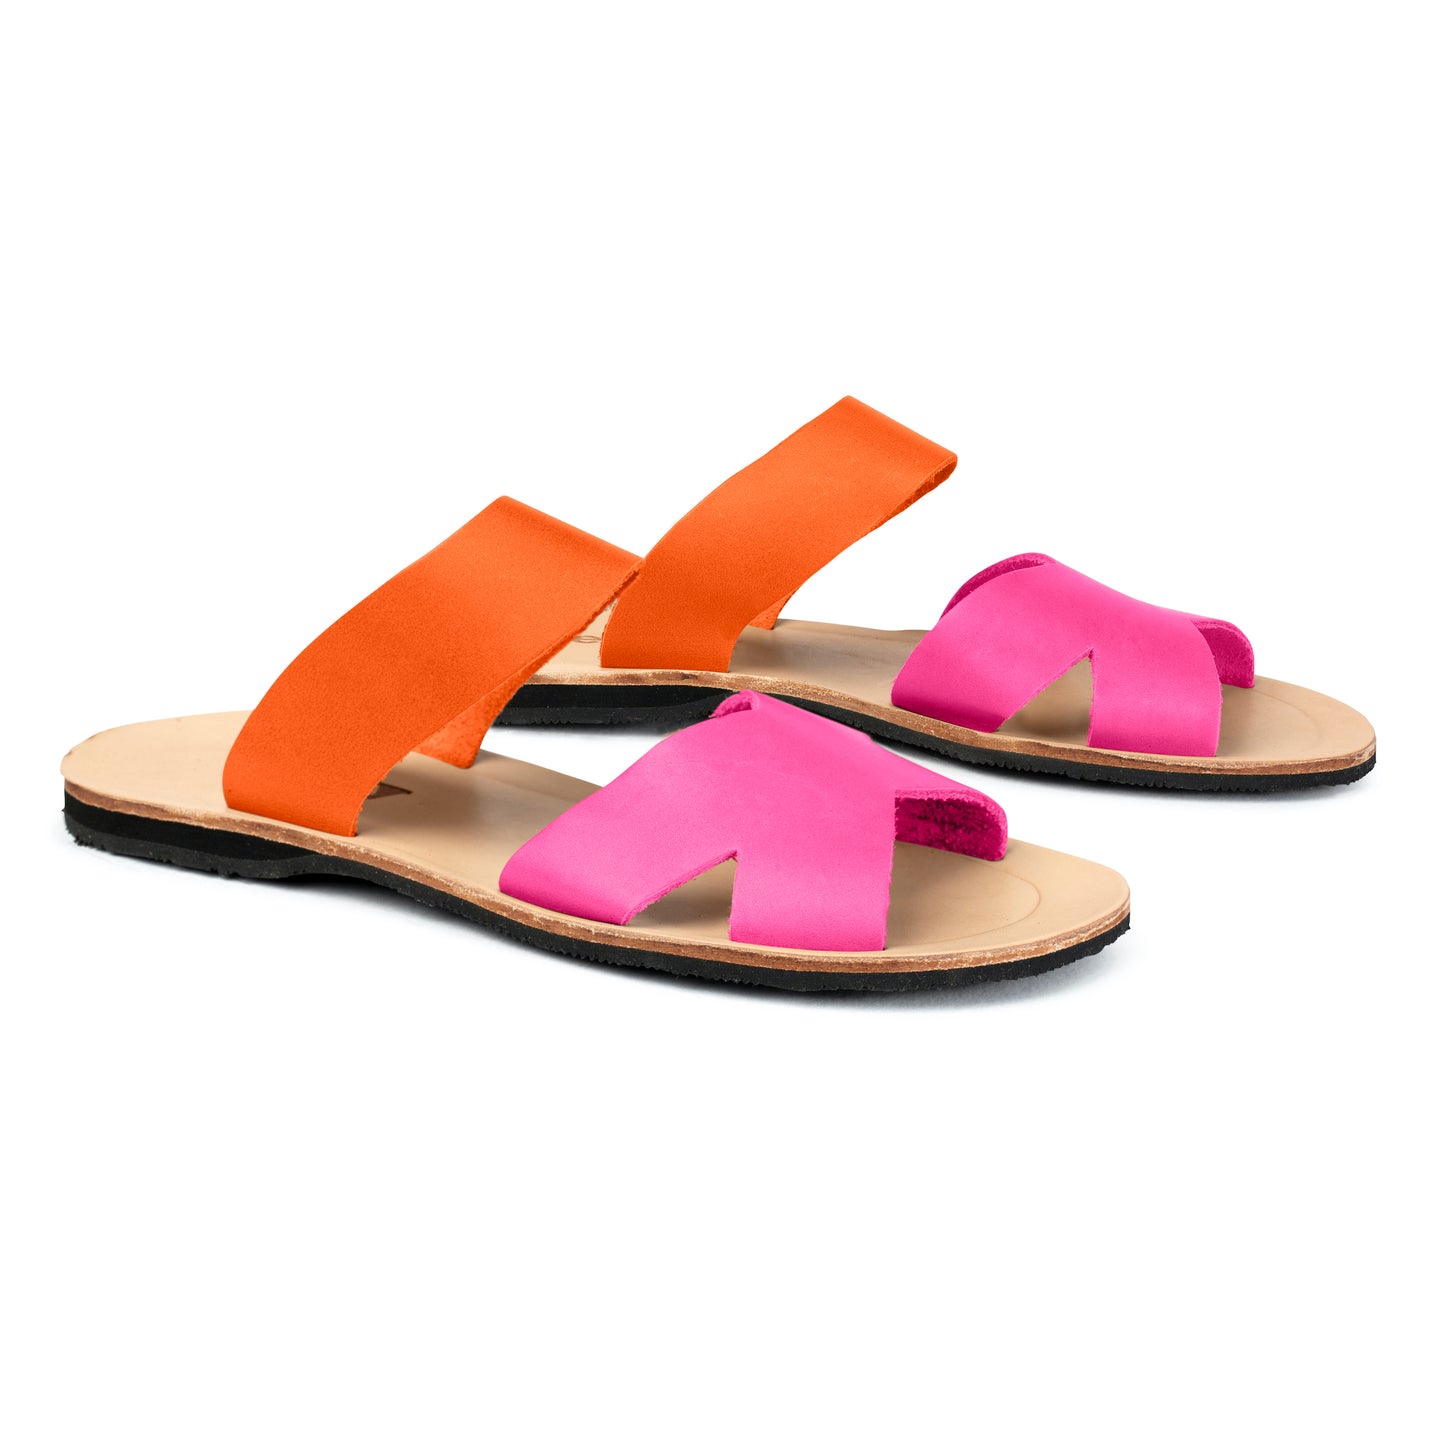 Mabel Leather Sandal - Pink/Orange